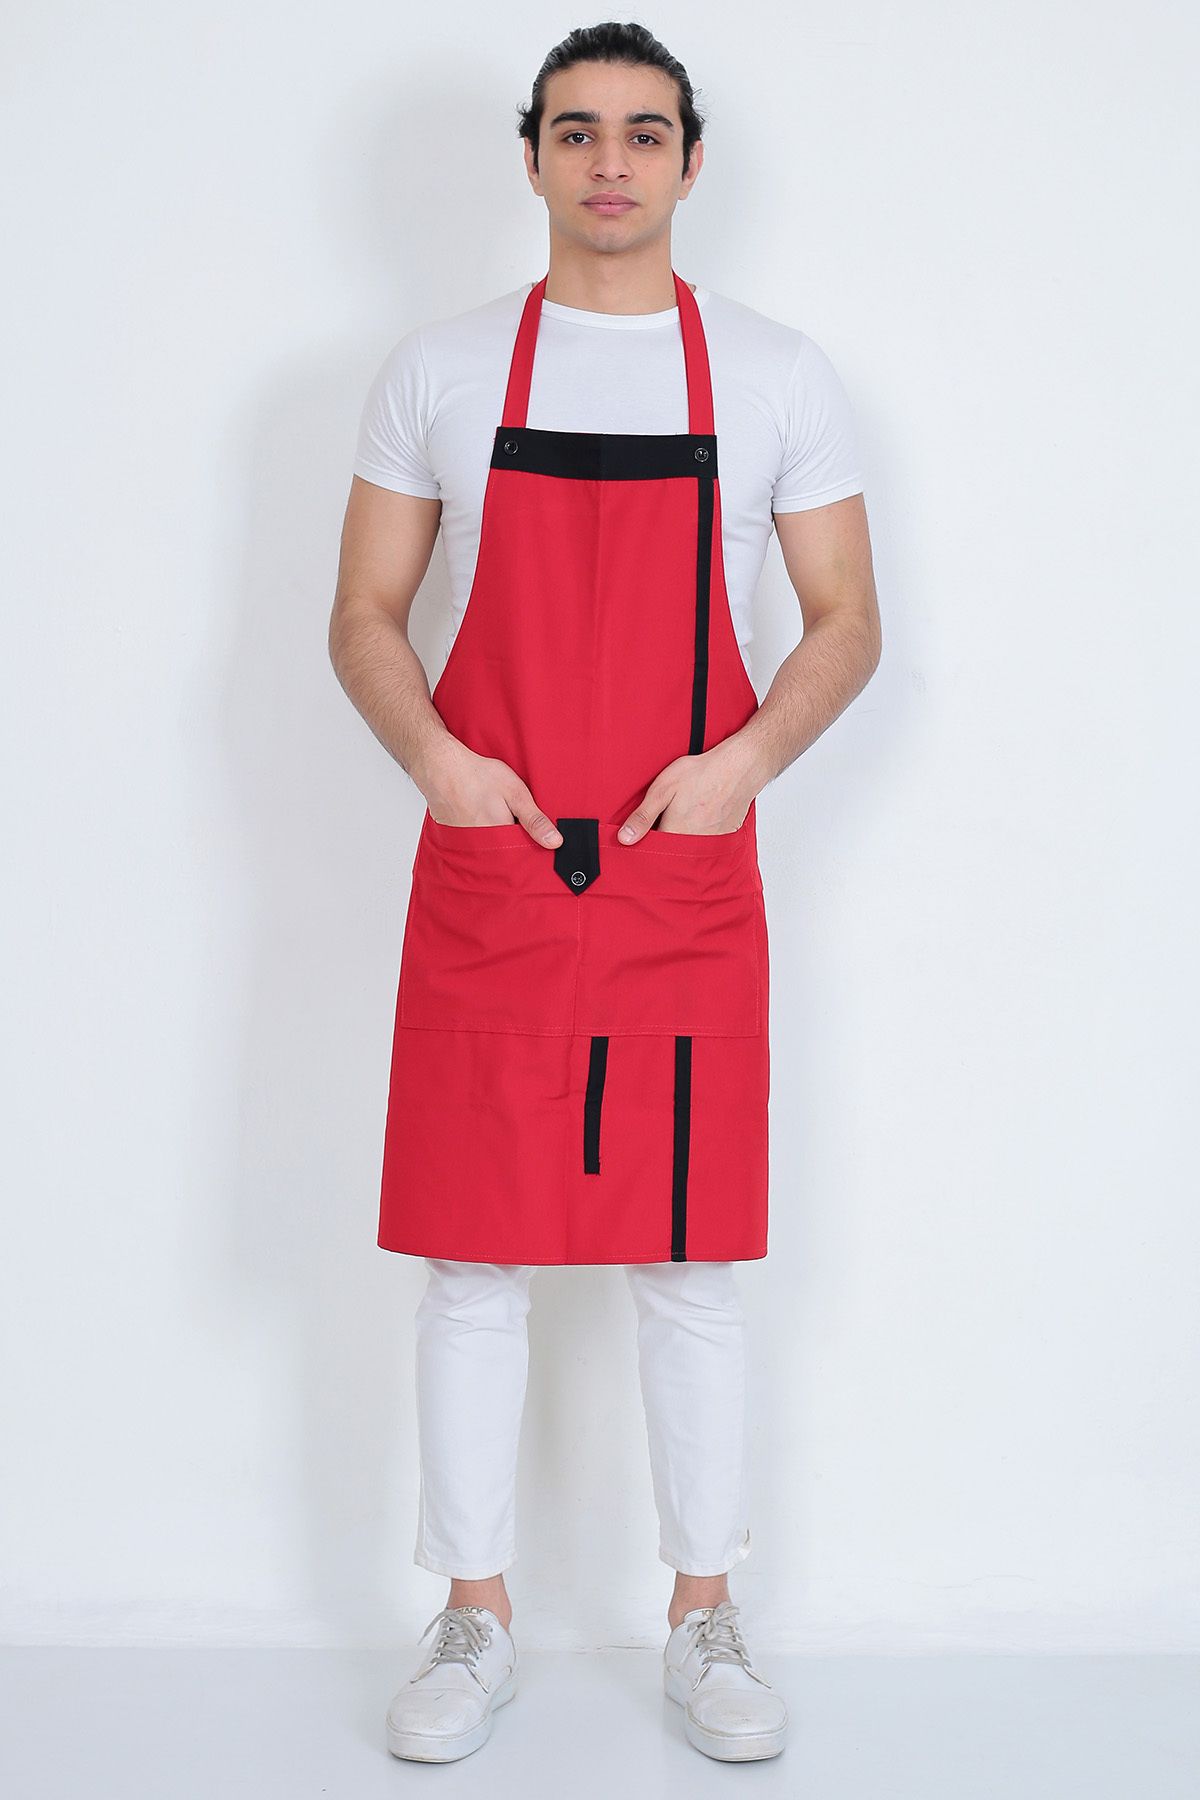 Umut Tekstil Mutfak Garson Aşçı Şef Iş Servis Önlüğü Boydan Askılı Cepli Düğmeli Kırmızı Unisex